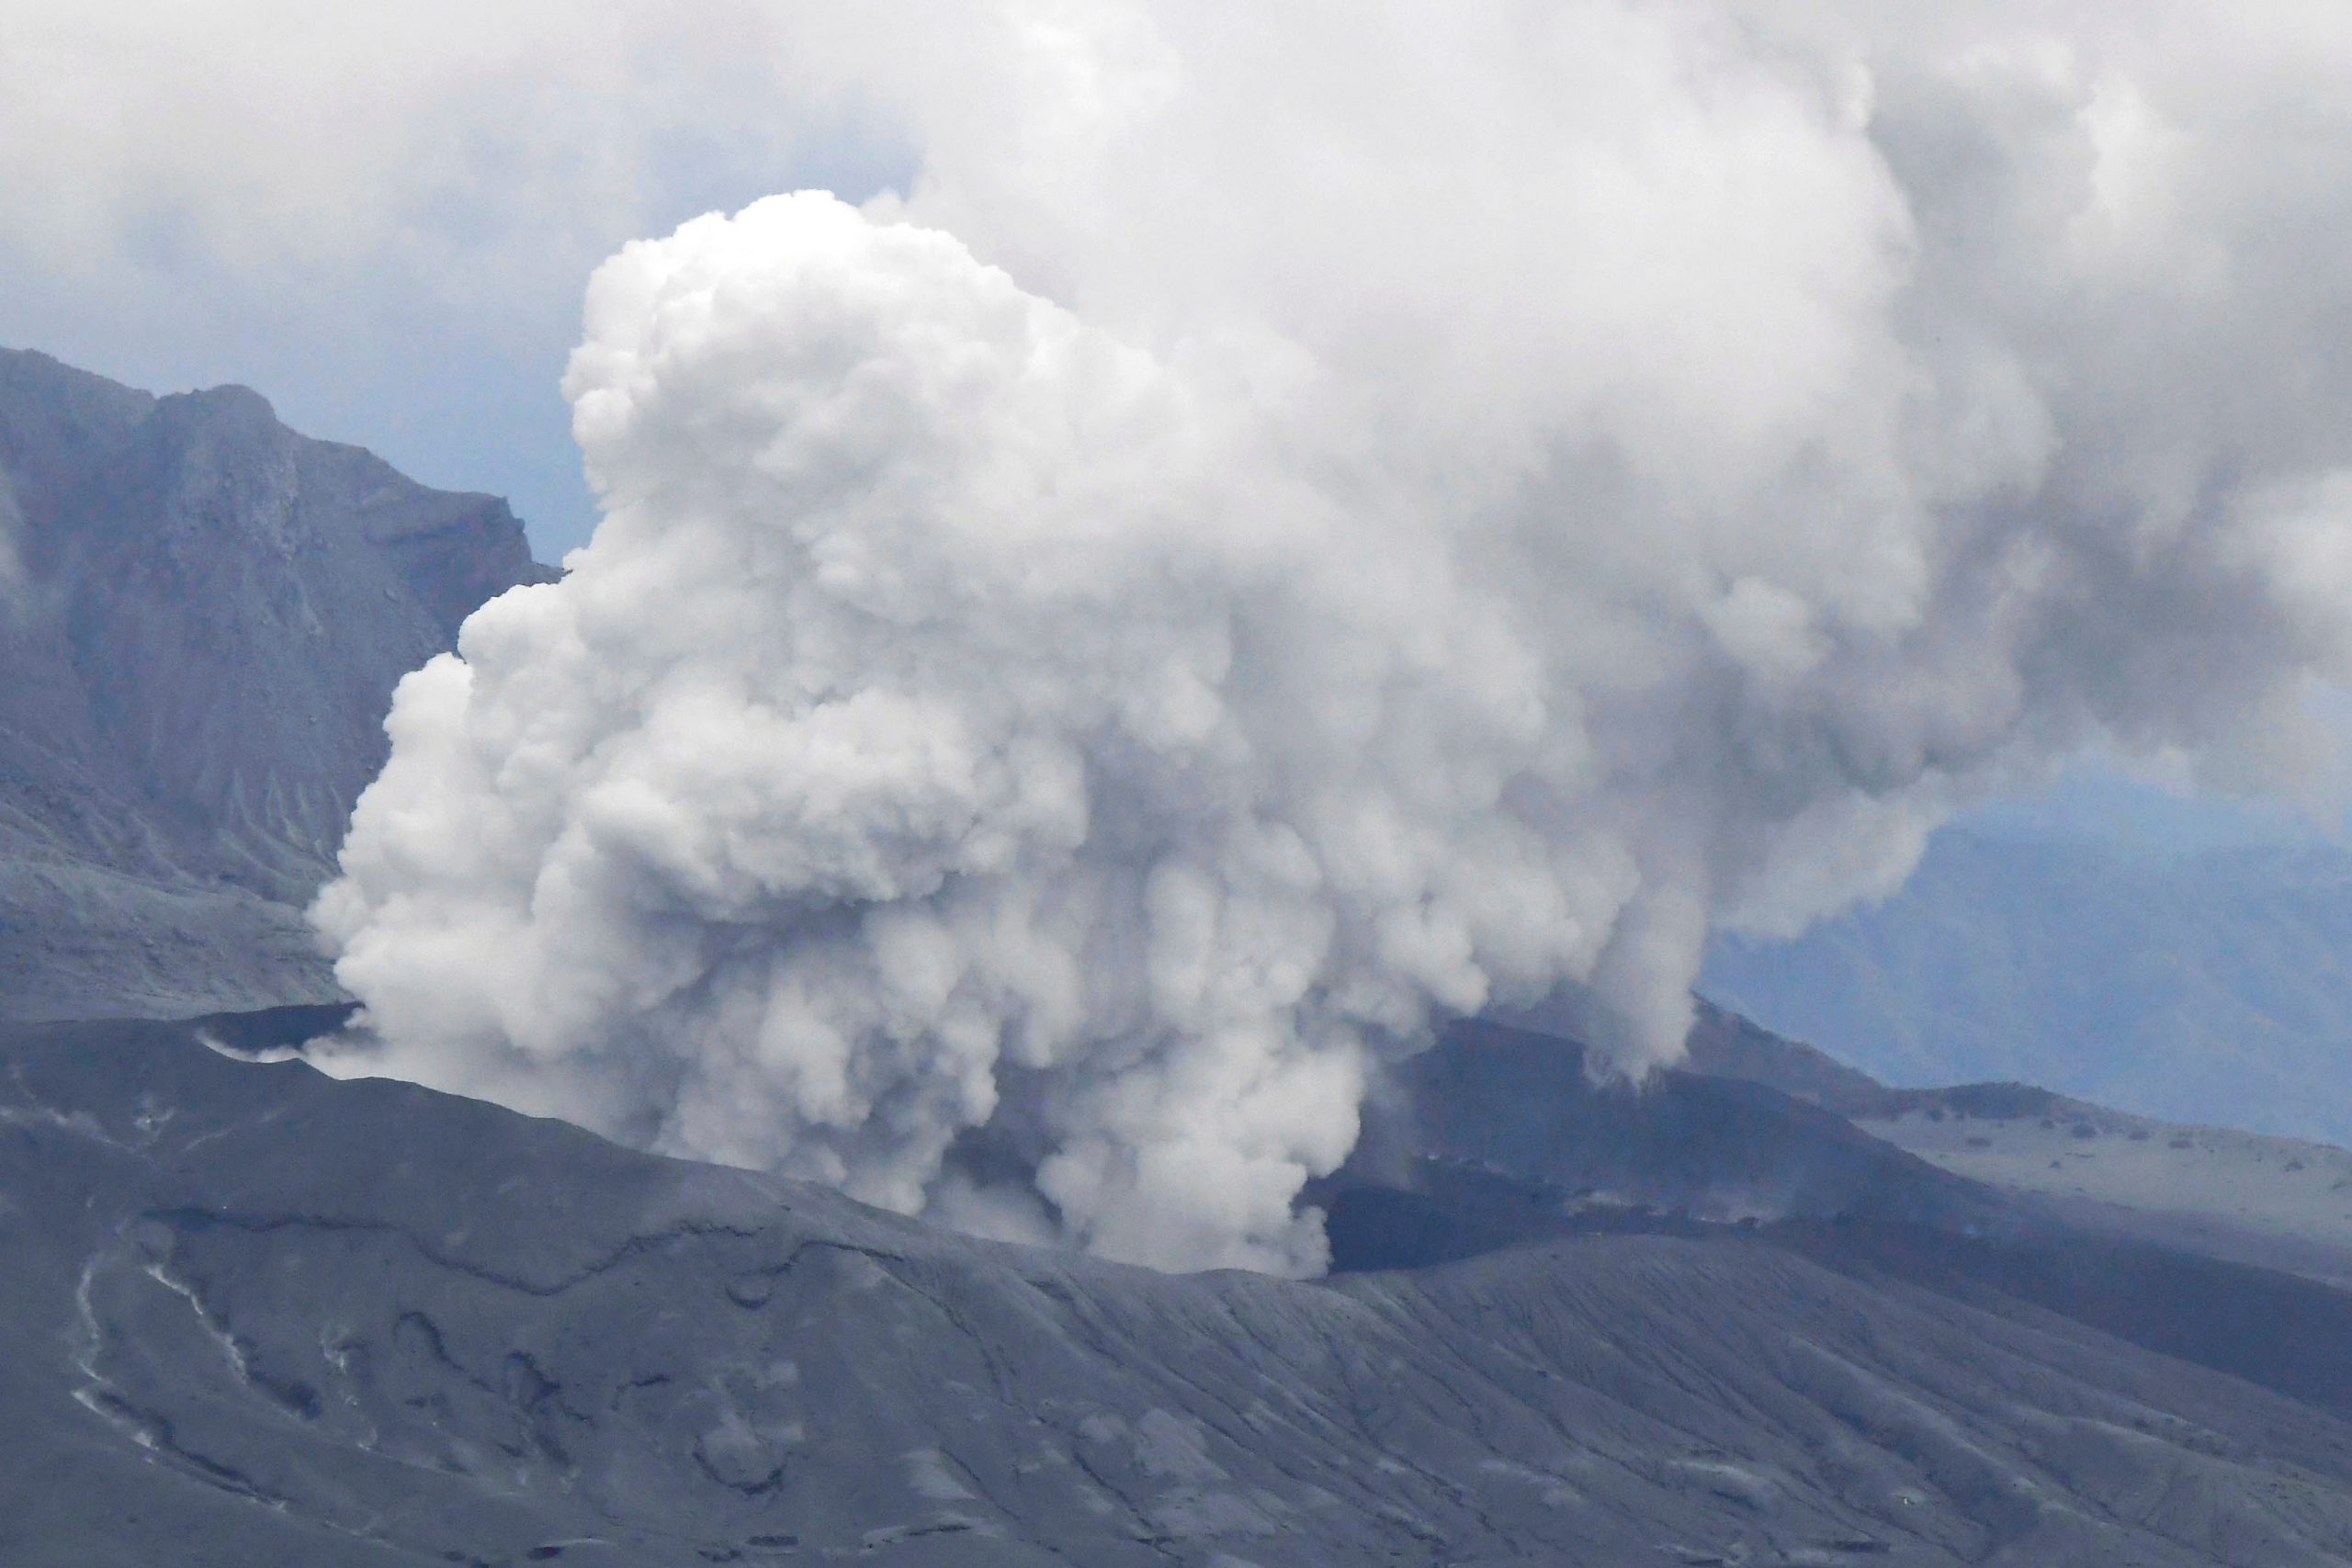 Japanese volcano spews plumes of ash, people warned away